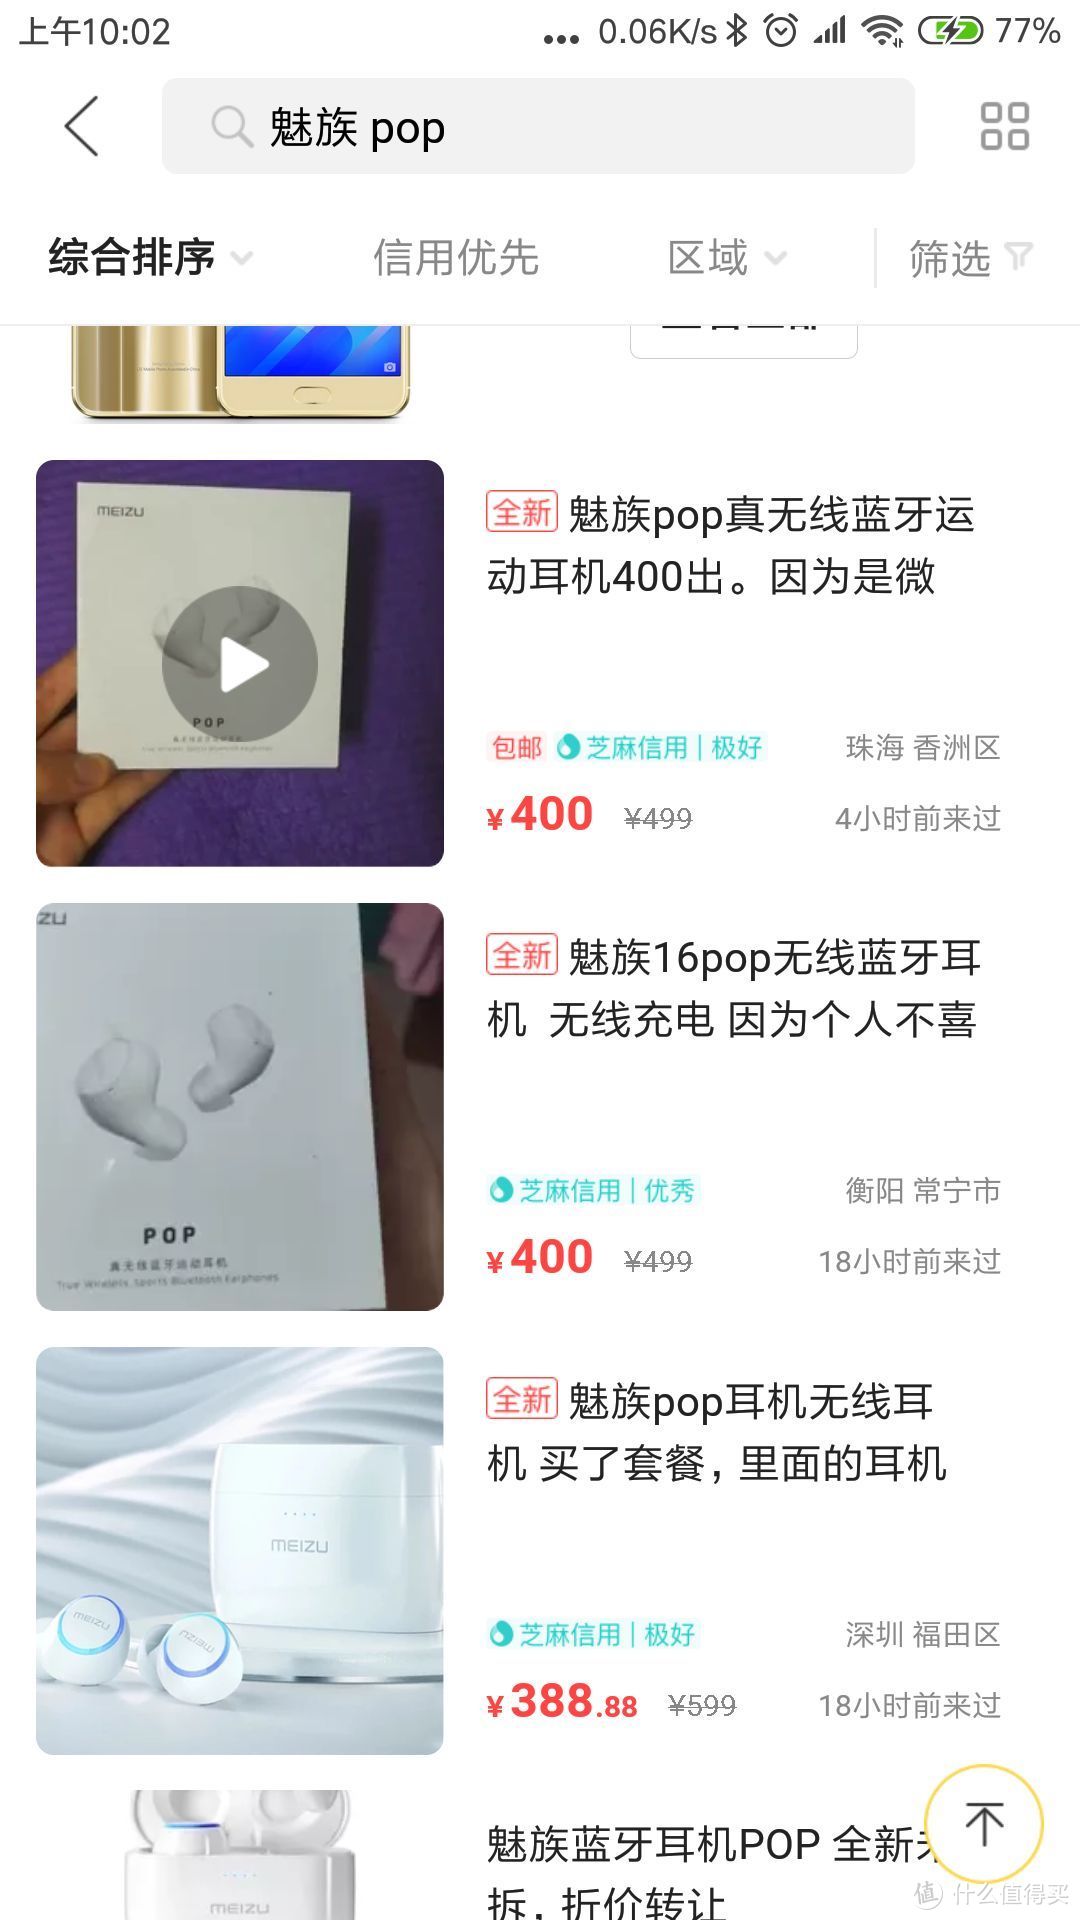 第6条魅族耳机—Meizu 魅族 POP 耳机 剁手报告